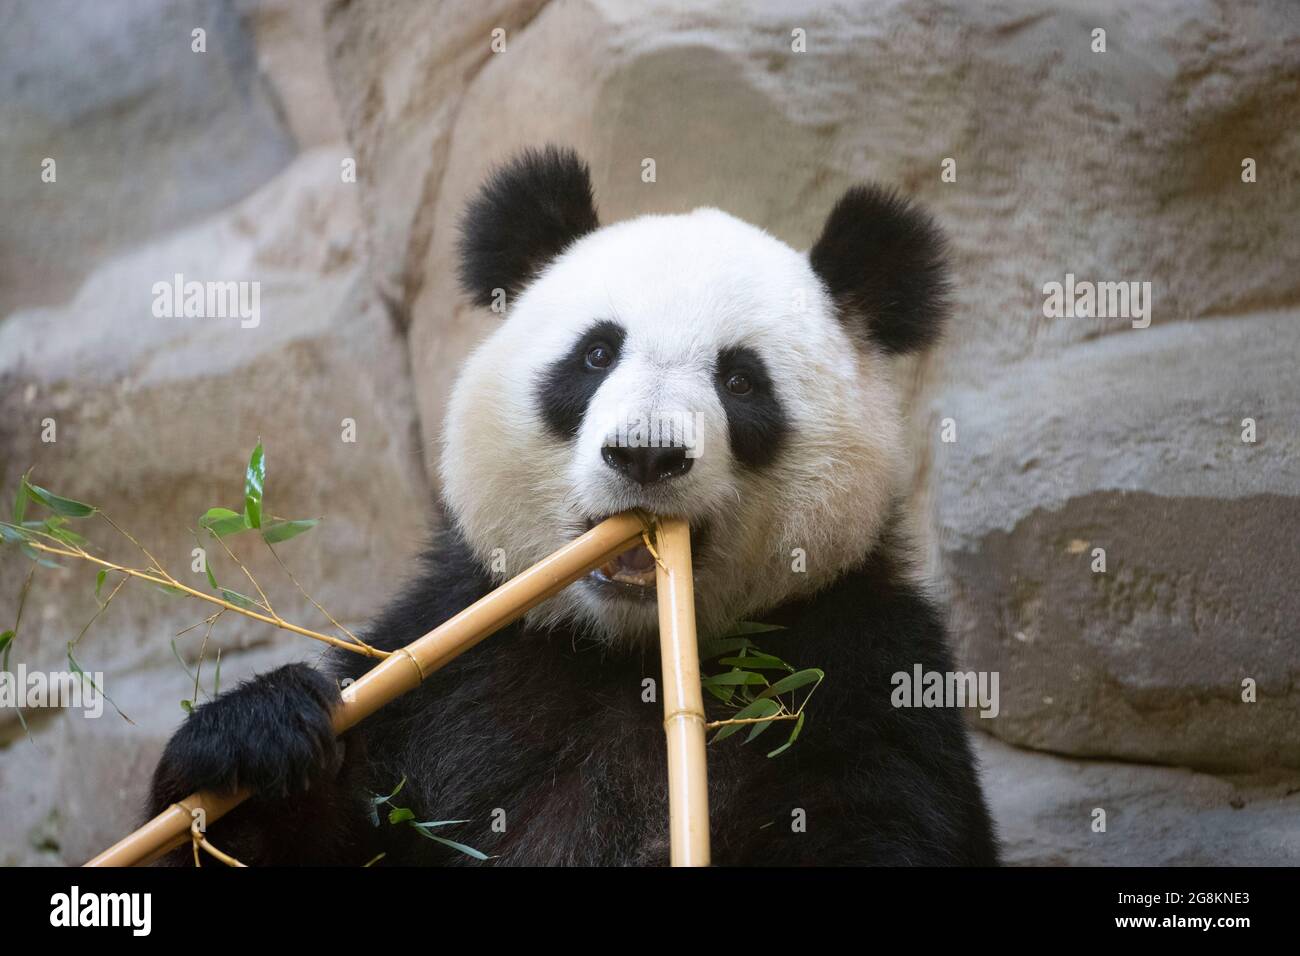 (210721) -- BEAUVAL, 21 de julio de 2021 (Xinhua) -- Foto del archivo tomada el 5 de mayo de 2021 muestra panda gigante Huan Huan en el zoológico de Beauval en Saint-Aignan-sur-Cher, Francia. Huan Huan, un panda gigante en el zoológico de Beauval en el centro de Francia, está embarazada y el nacimiento de su cachorro se espera en unos 10 días, anunció el zoológico. Huan Huan, que significa 'feliz' en chino, y su amigo Yuan Zi, nacieron en Chengdu, China, y llegaron a Francia en 2012 cuando tenían tres años. (Zoológico de Beauval/Folleto via Xinhua) Foto de stock